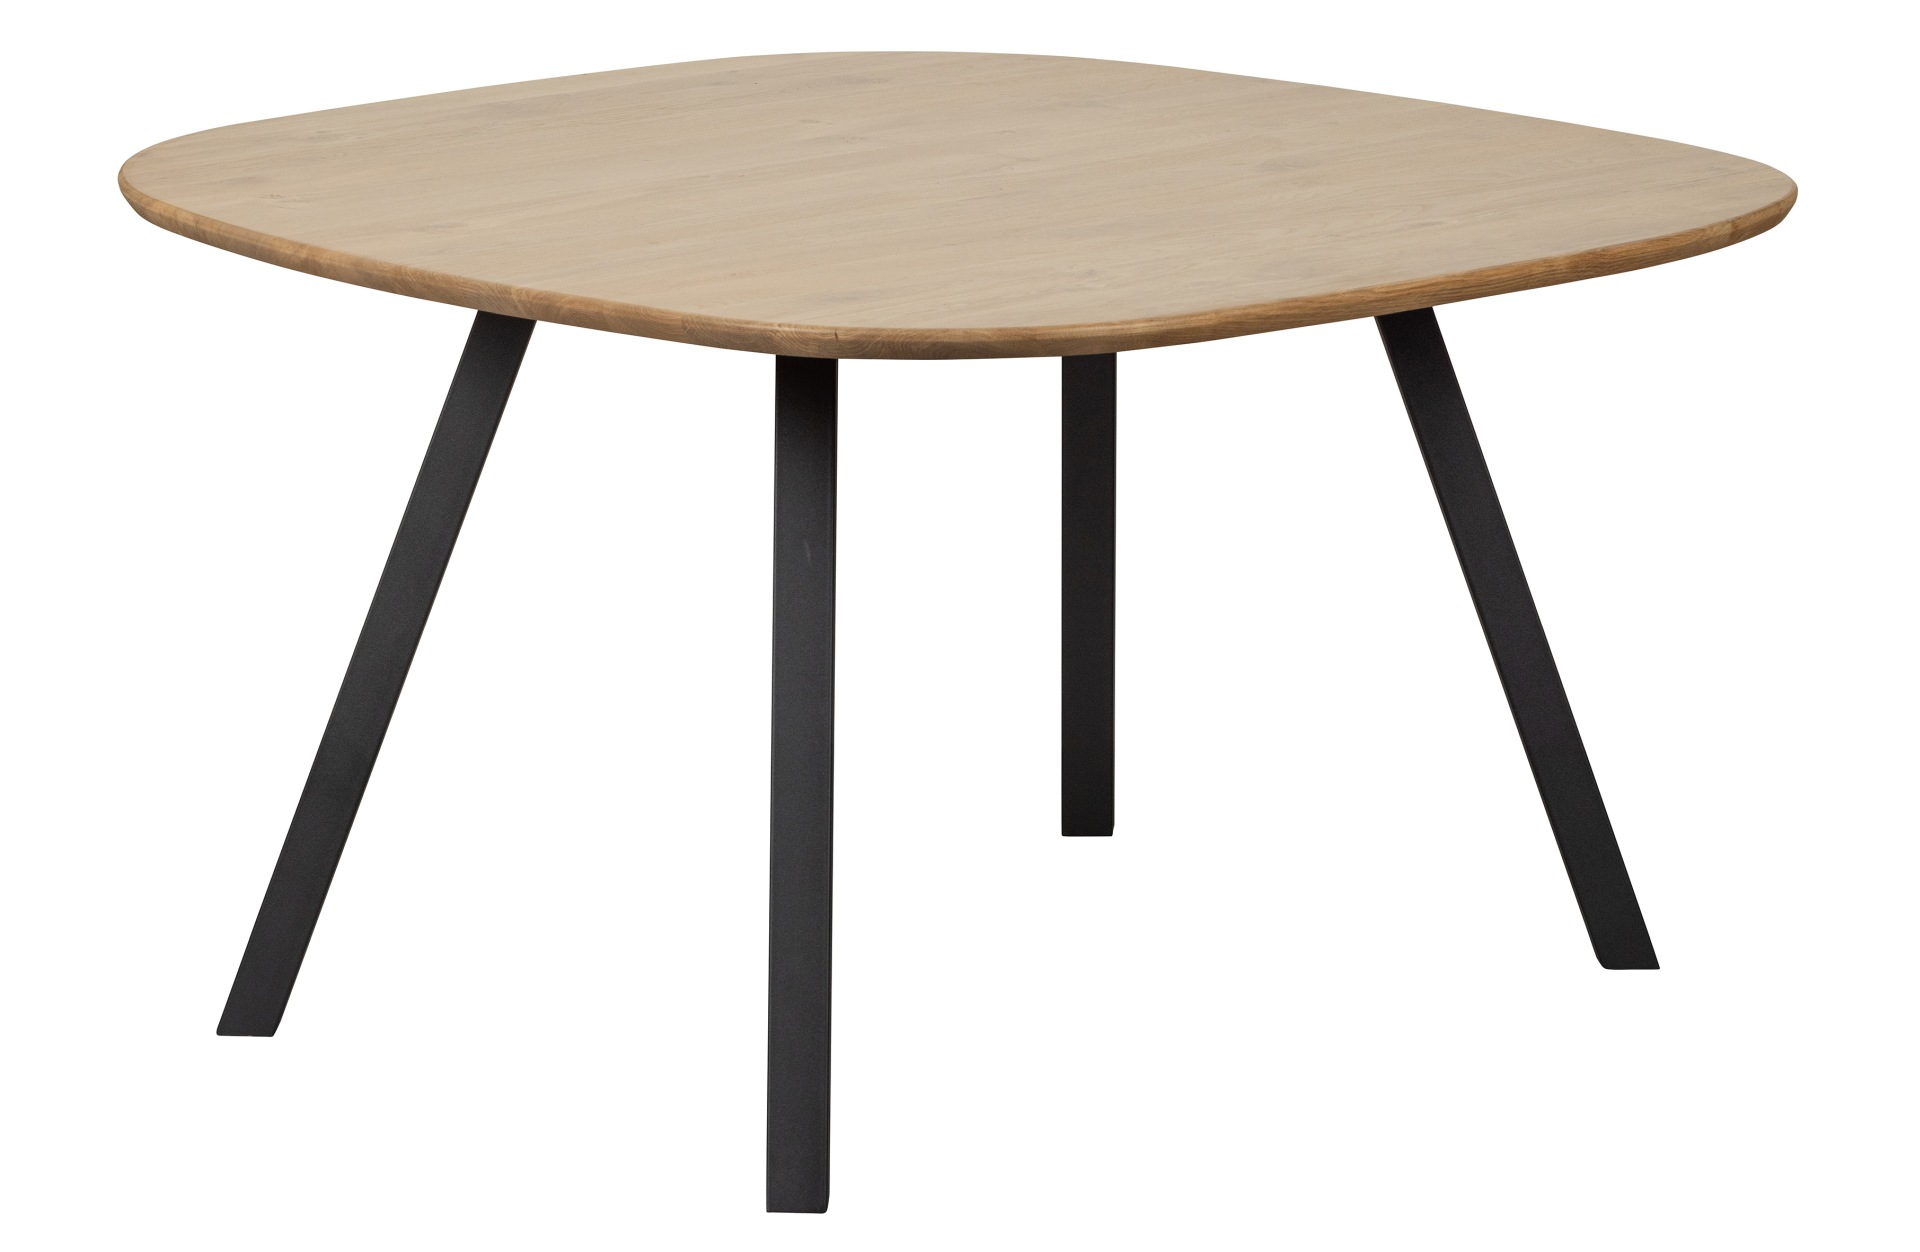 Der Esstisch Tablo überzeugt mit seiner besonderen Form. Gefertigt wurde der Tisch aus Eichenholz und in Kombination mit dem Metallgestell entsteht ein besonderes Design.